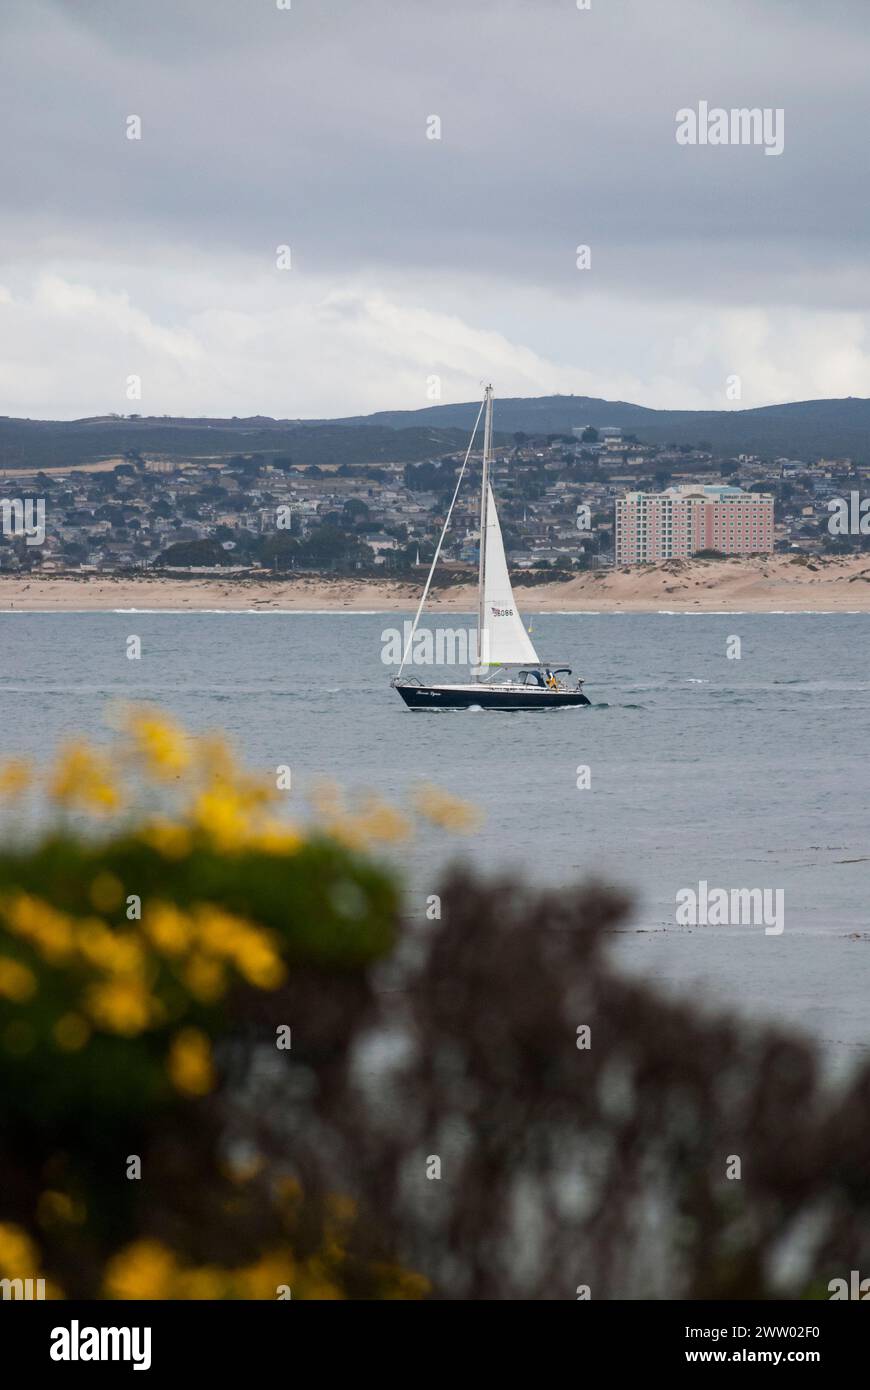 Un voilier traverse la baie de Monterey avec la communauté et les plages de Monterey et Seaside au loin, encadrées par des fleurs jaunes au premier plan. Banque D'Images